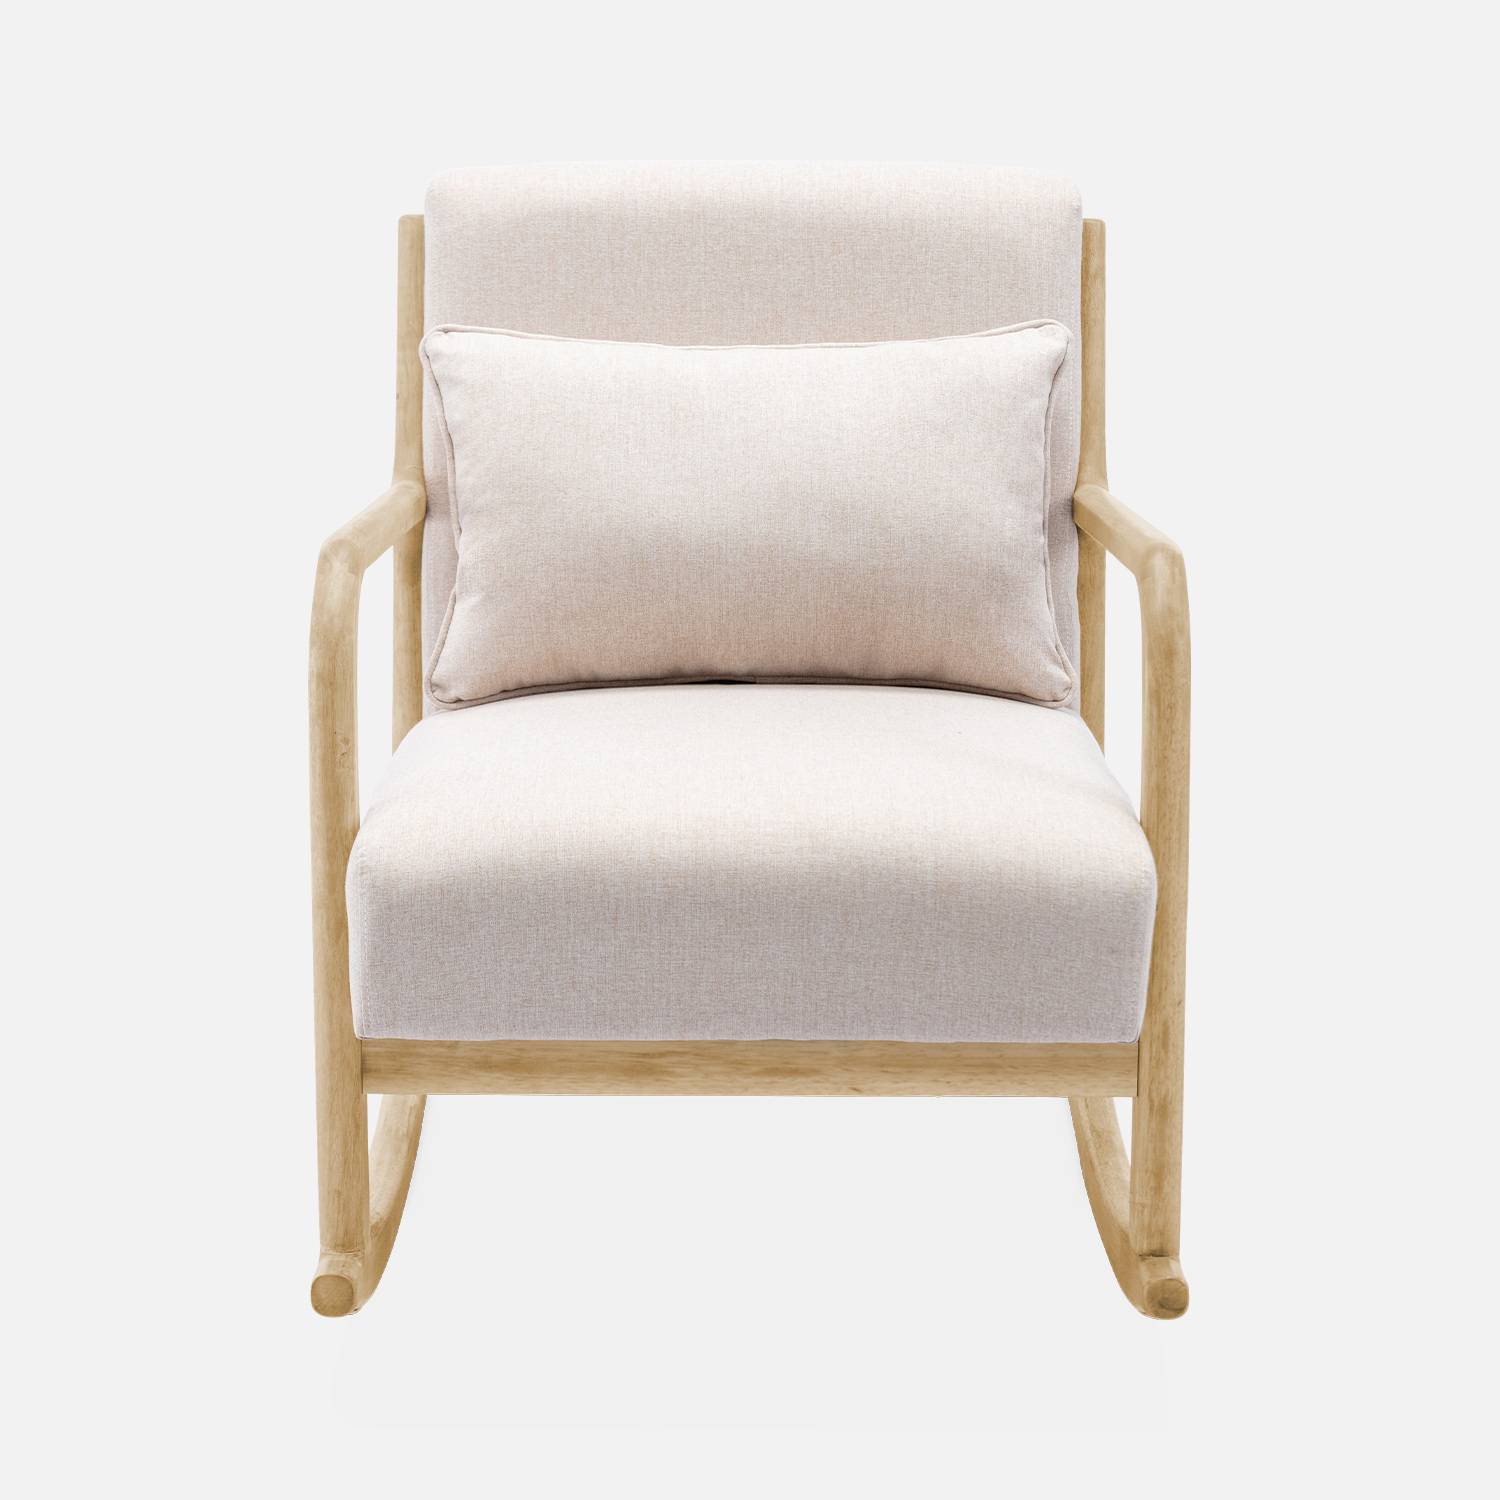 Sedia a dondolo di design in legno e tessuto, 1 posto, sedia a dondolo scandinava, beige Photo4